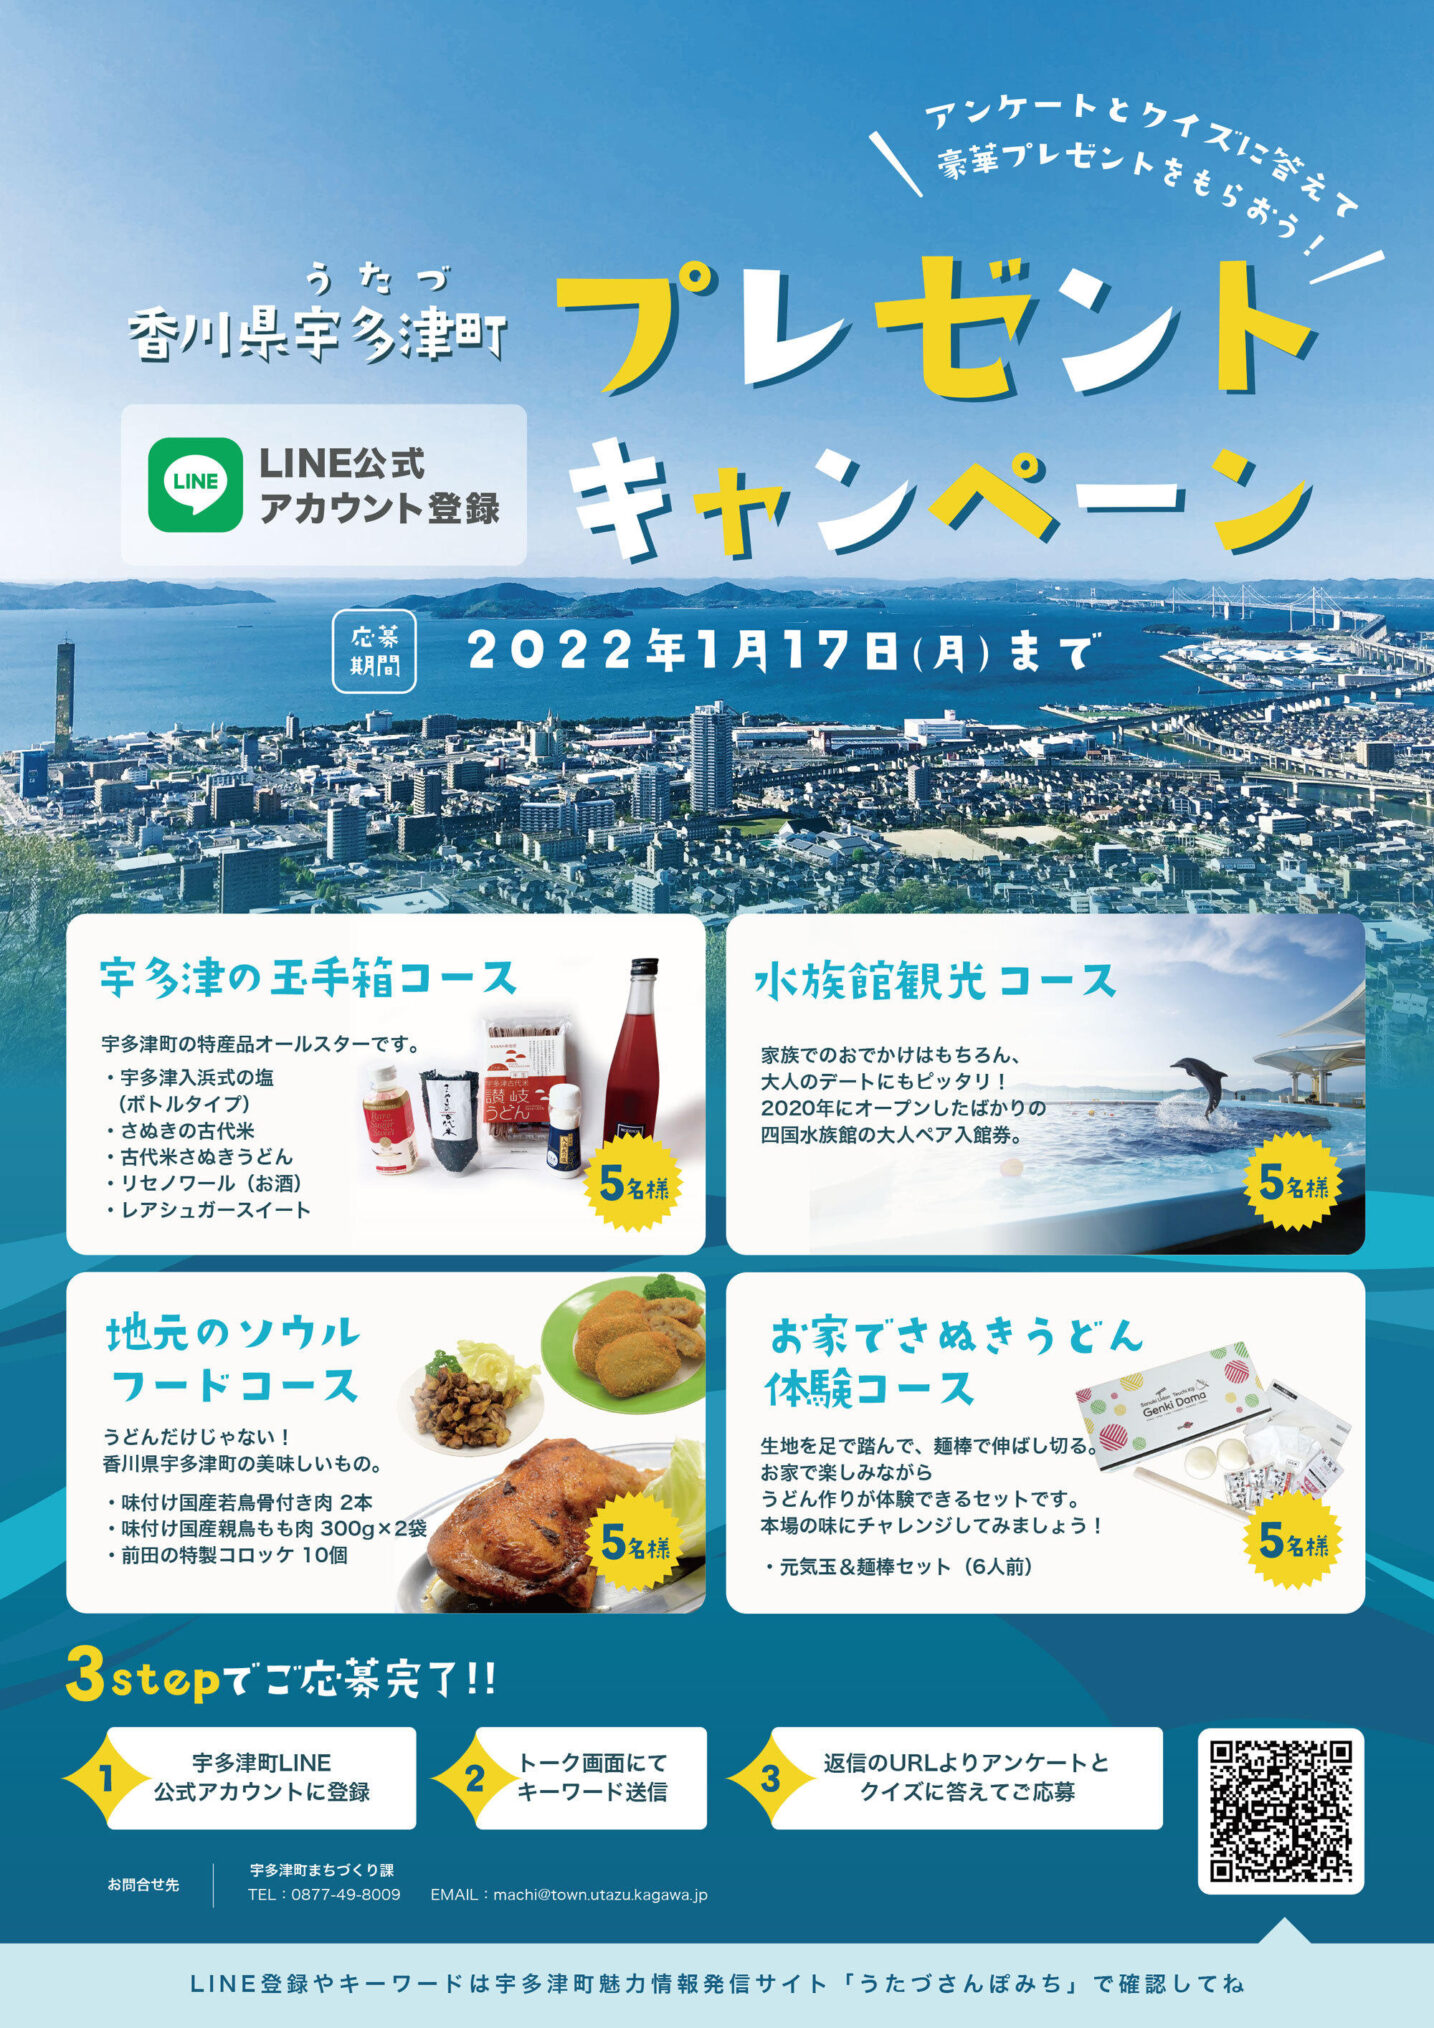 宇多津町 LINE公式アカウント登録プレゼントキャンペーン